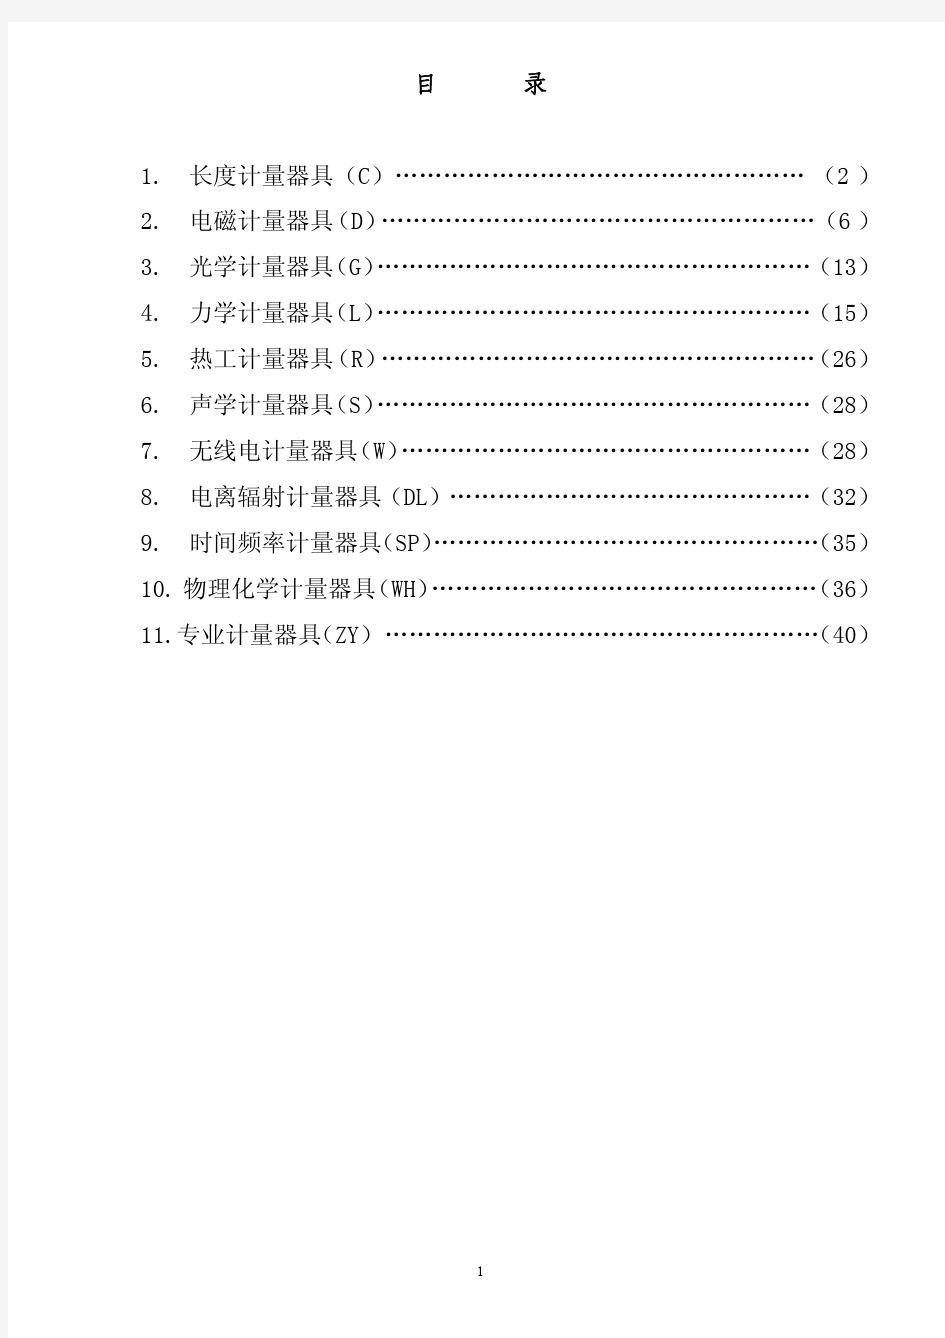 2009年云南省计量检定收费标准-20100908